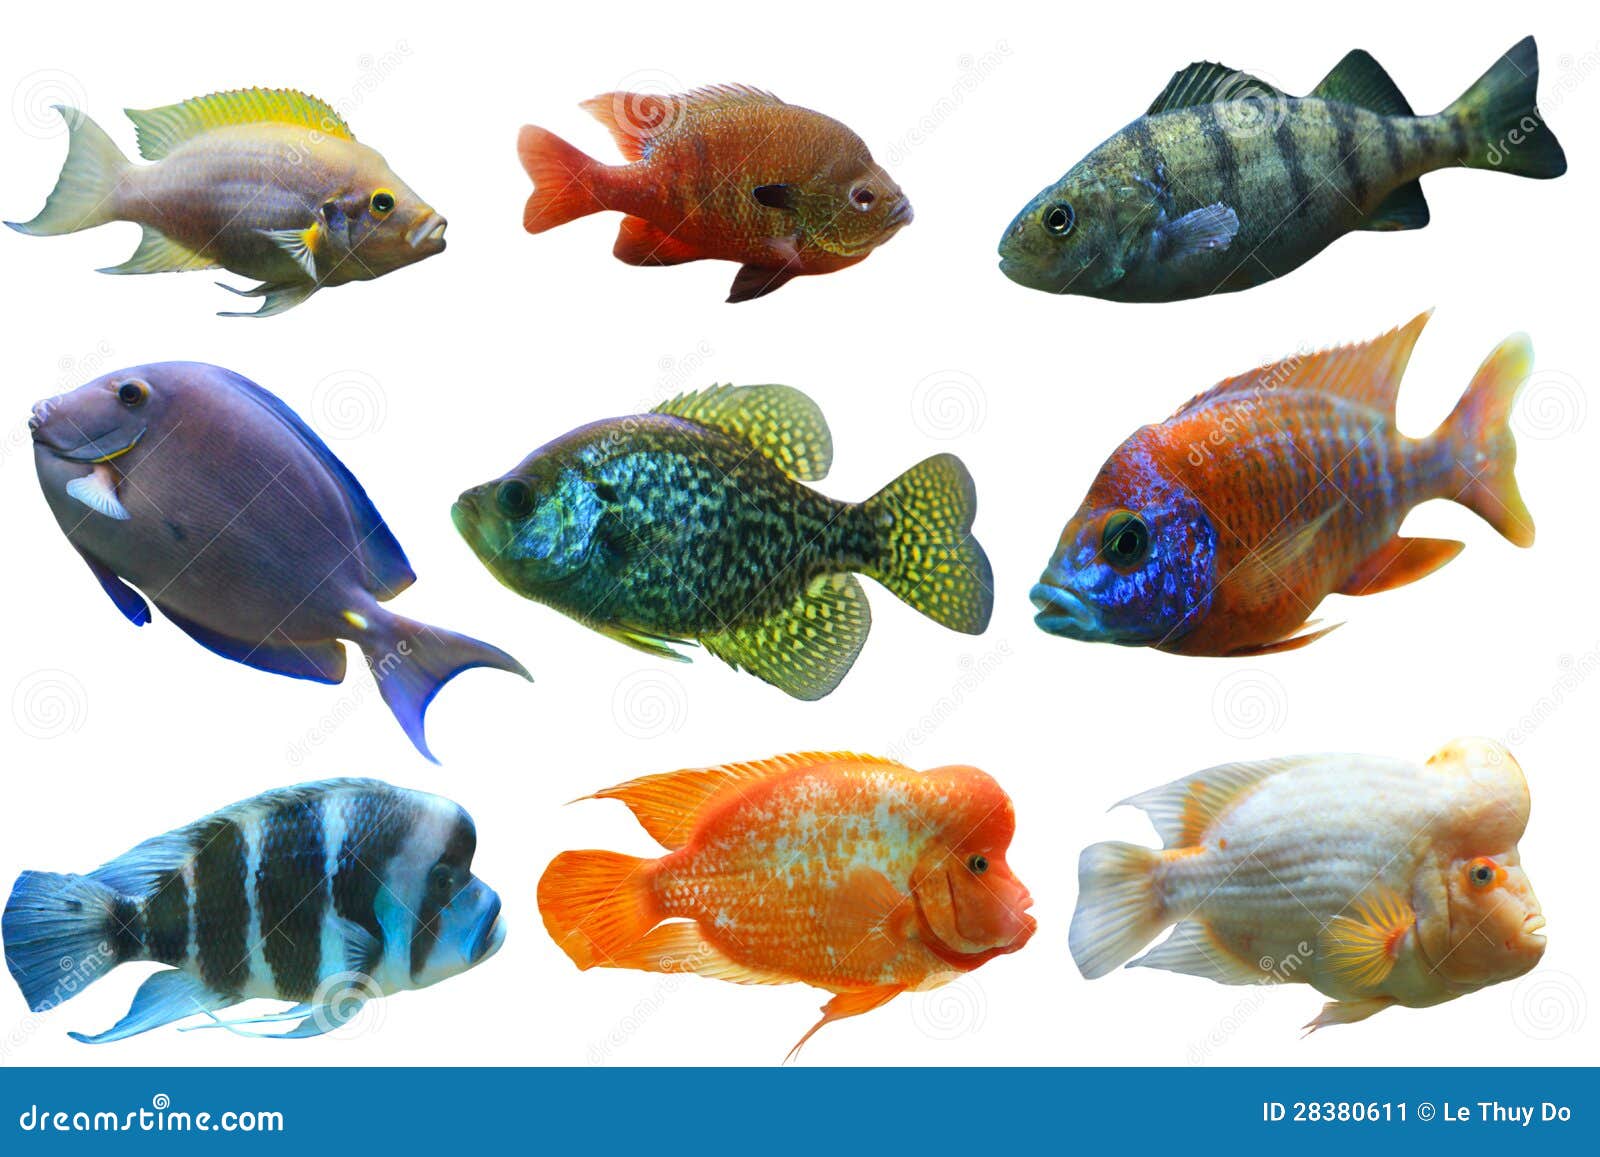 Аквариумная рыбка на букву т. Рыбки для аквариума. Разноцветные рыбы для детей. Аквариумные рыбки для детей. Разноцветные рыбки для печати.